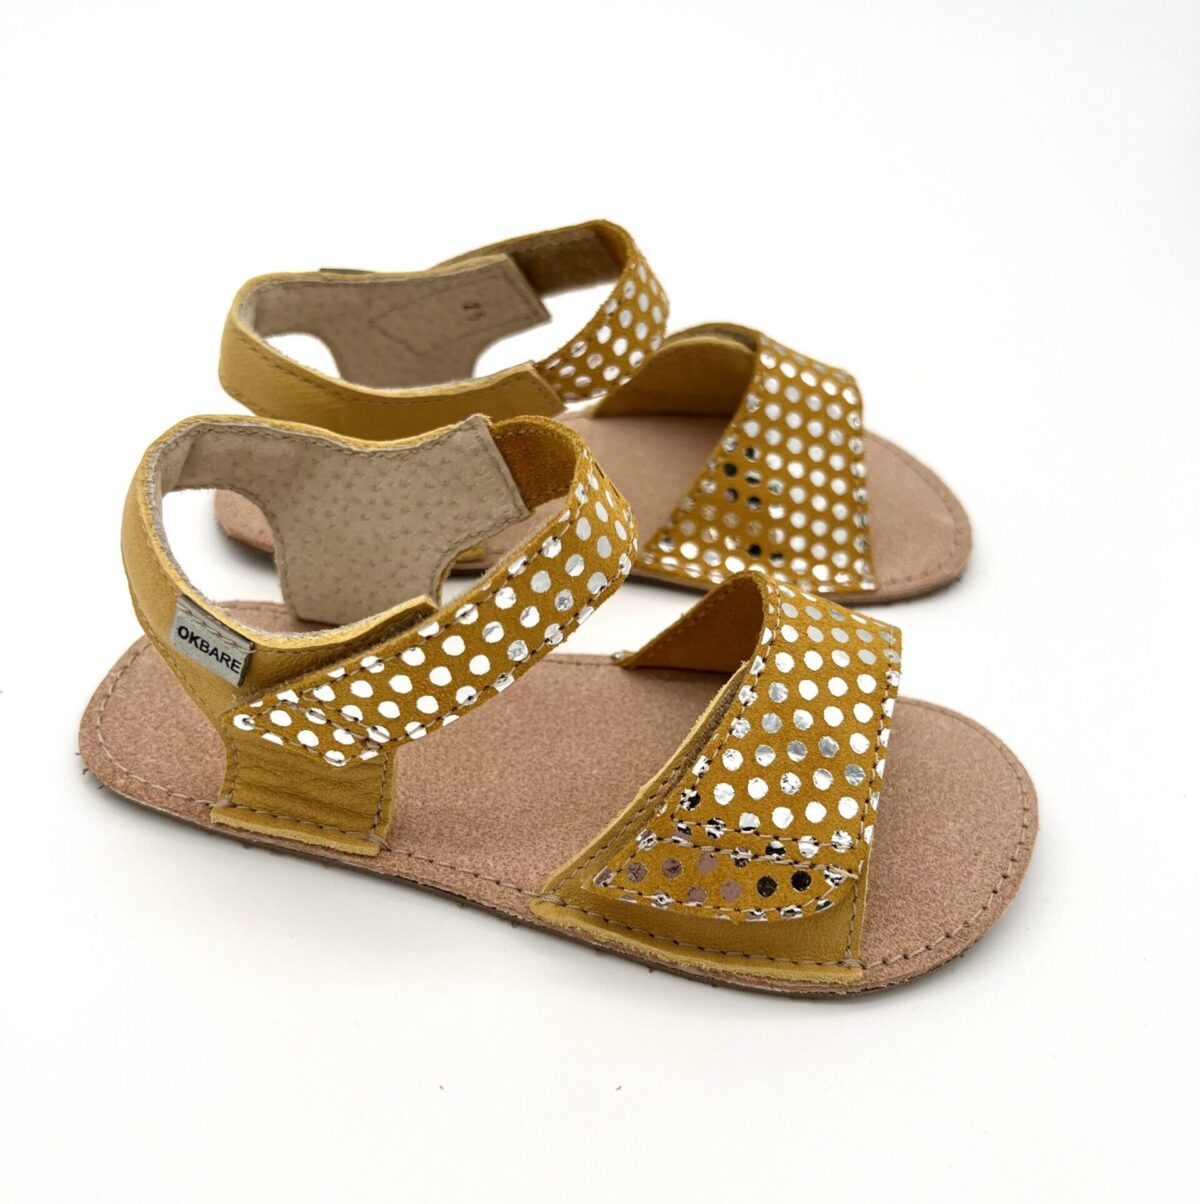 Ok Bare Mirrisa sandaalid, Kuldkollane Laste barefoot jalatsid - HellyK - Kvaliteetsed lasteriided, villariided, barefoot jalatsid